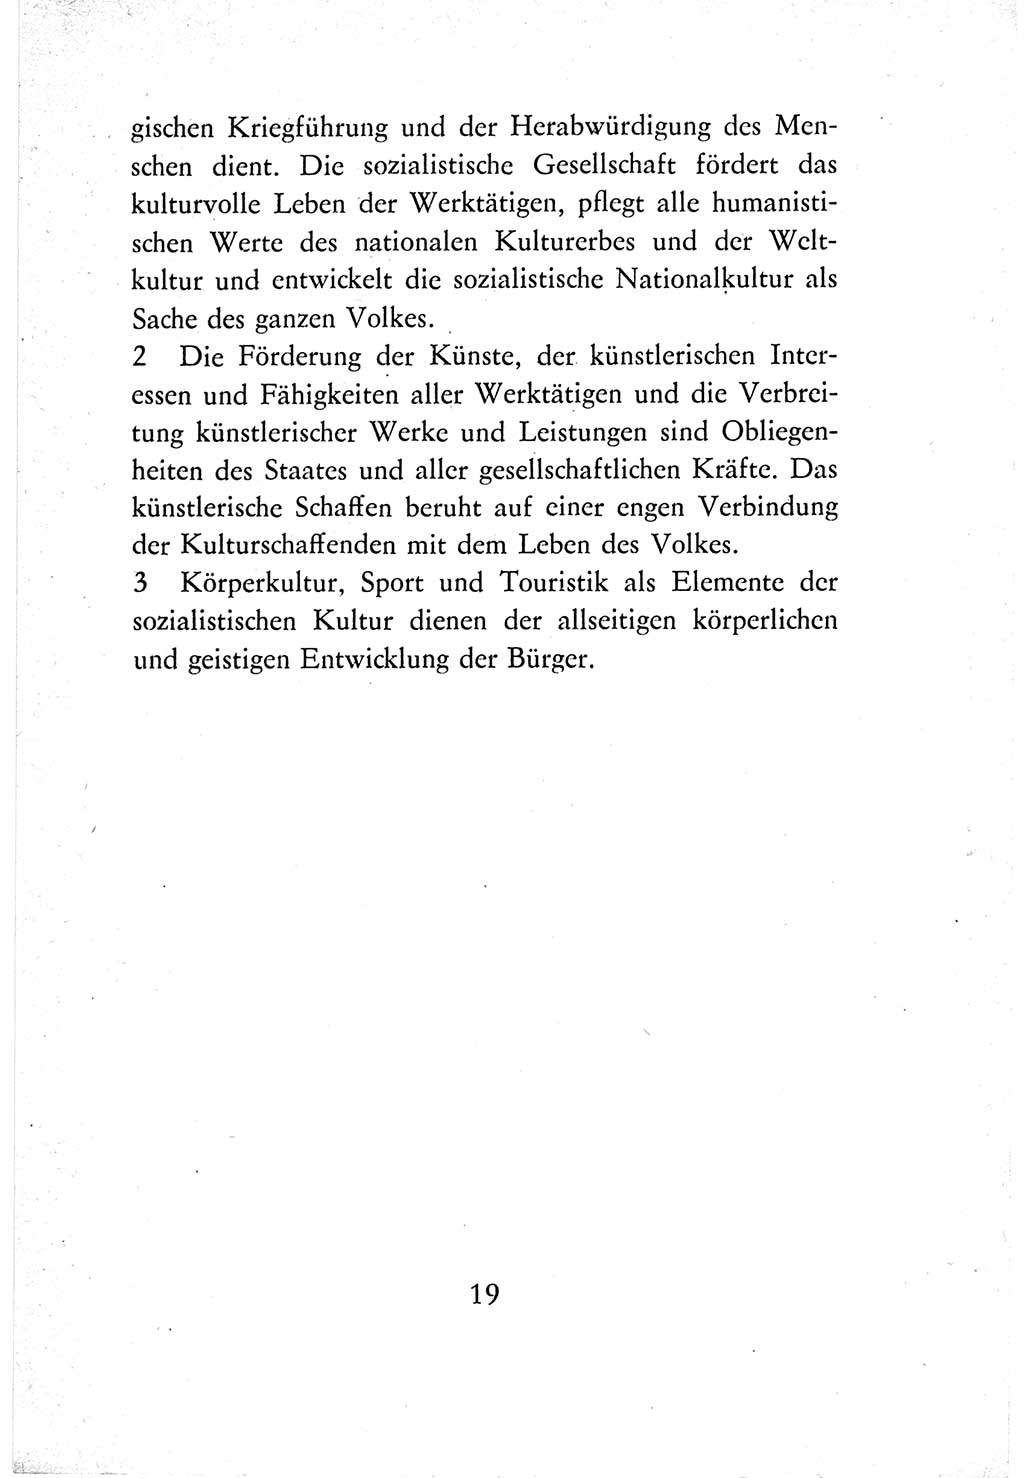 Verfassung der Deutschen Demokratischen Republik (DDR) vom 7. Oktober 1974, Seite 19 (Verf. DDR 1974, S. 19)